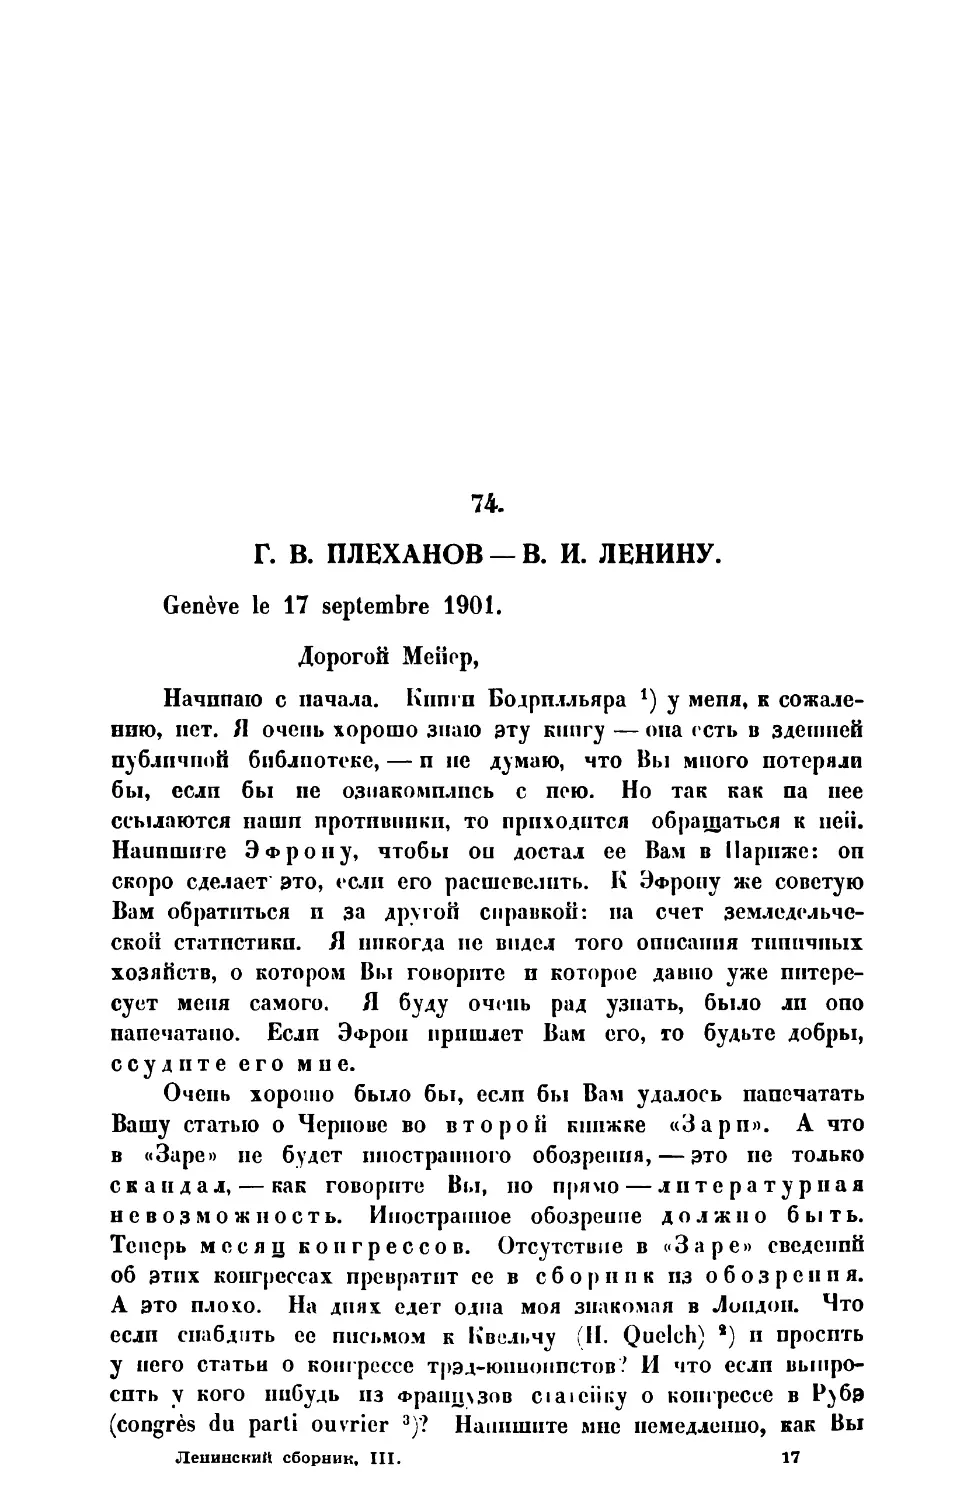 74. Г. В. Плеханов. — Письмо В. И. Ленину от 17 IX 1901 г.